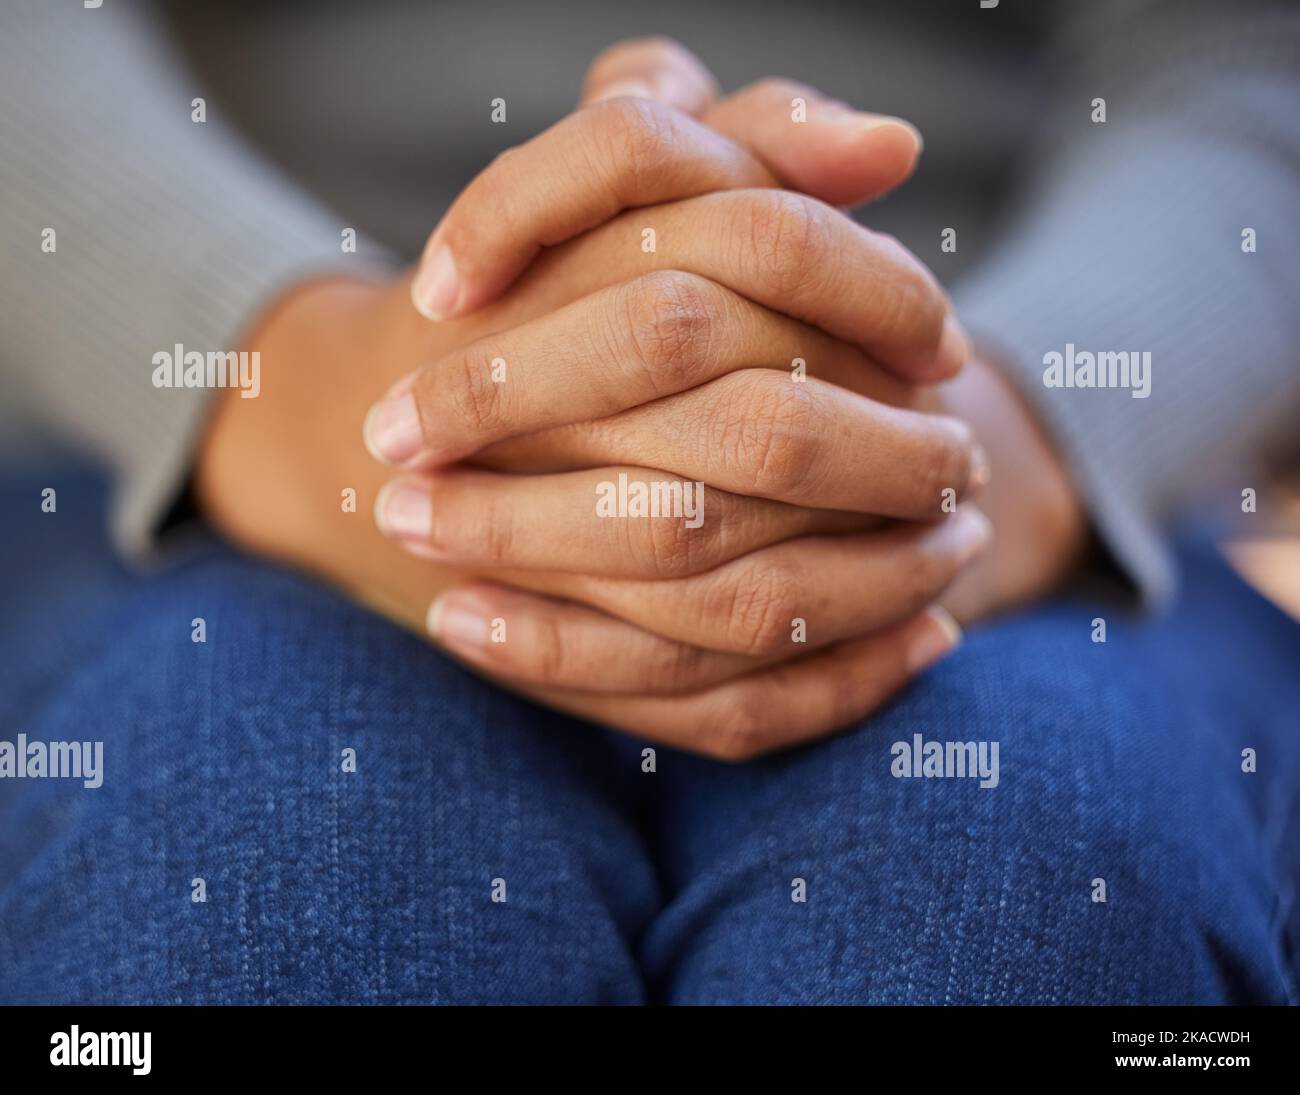 Frau, Hände zusammen und Nervendepression, Angst und psychische Gesundheit in psychologischer Beratung Therapie oder zu gott beten. Zoom, Gebetsfinger und Stockfoto